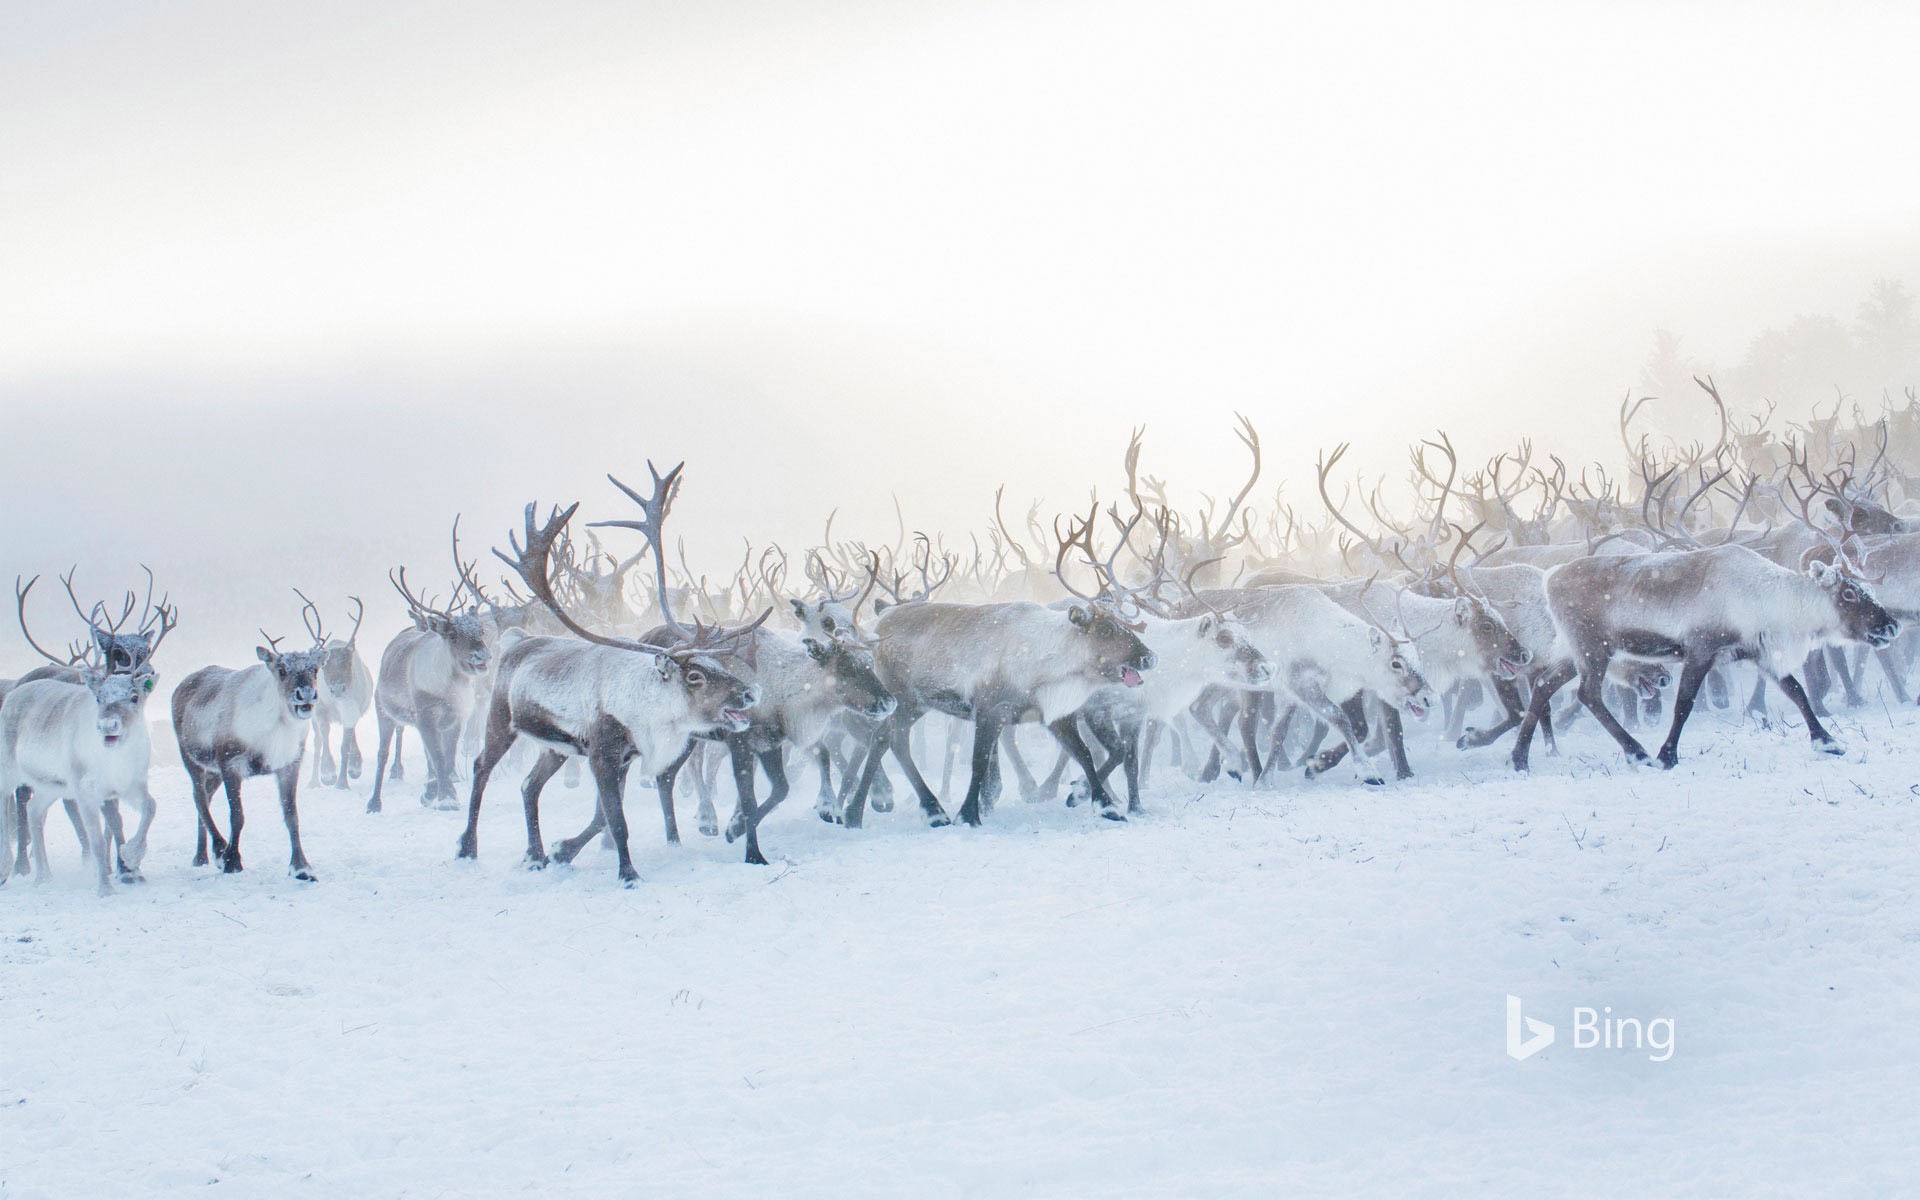 A herd of reindeer in Norway